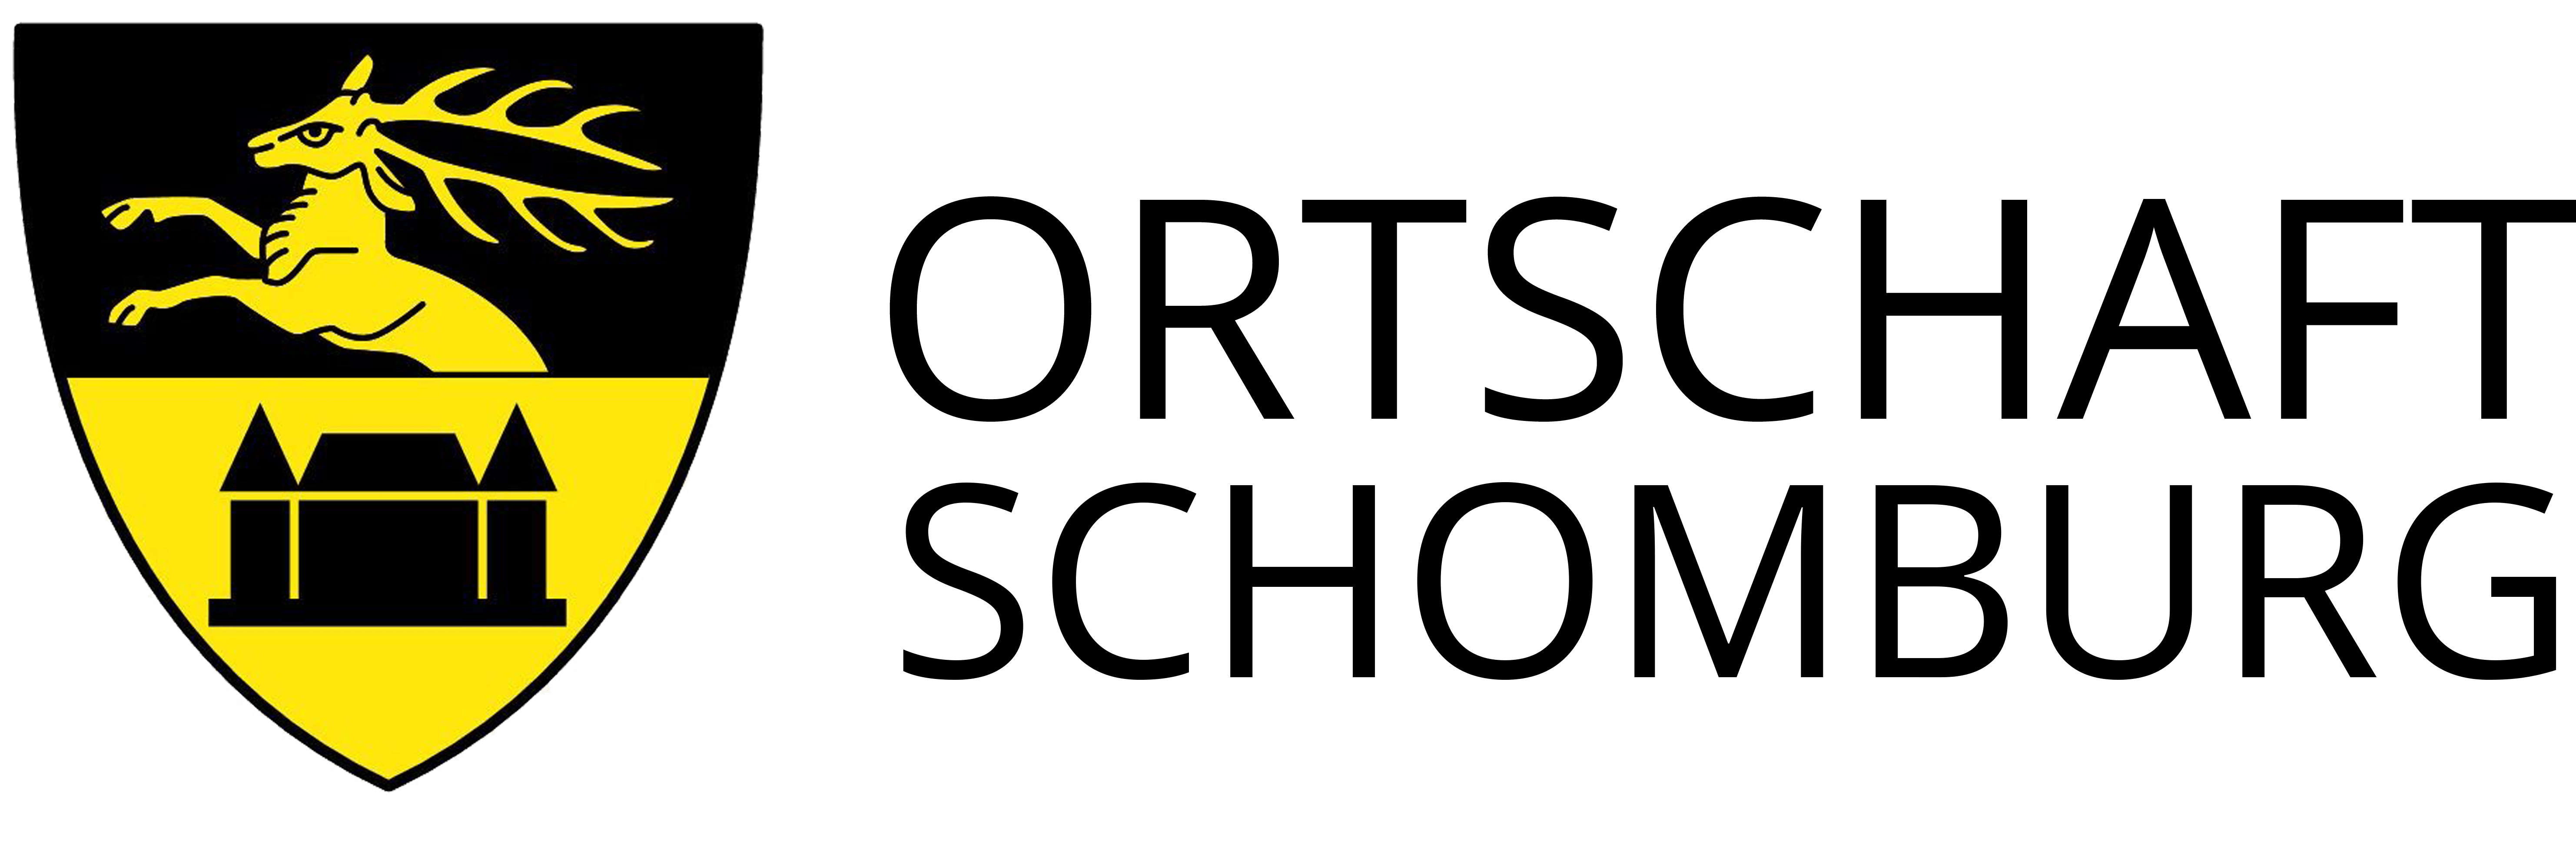 Logo Ortschaft Schomburg